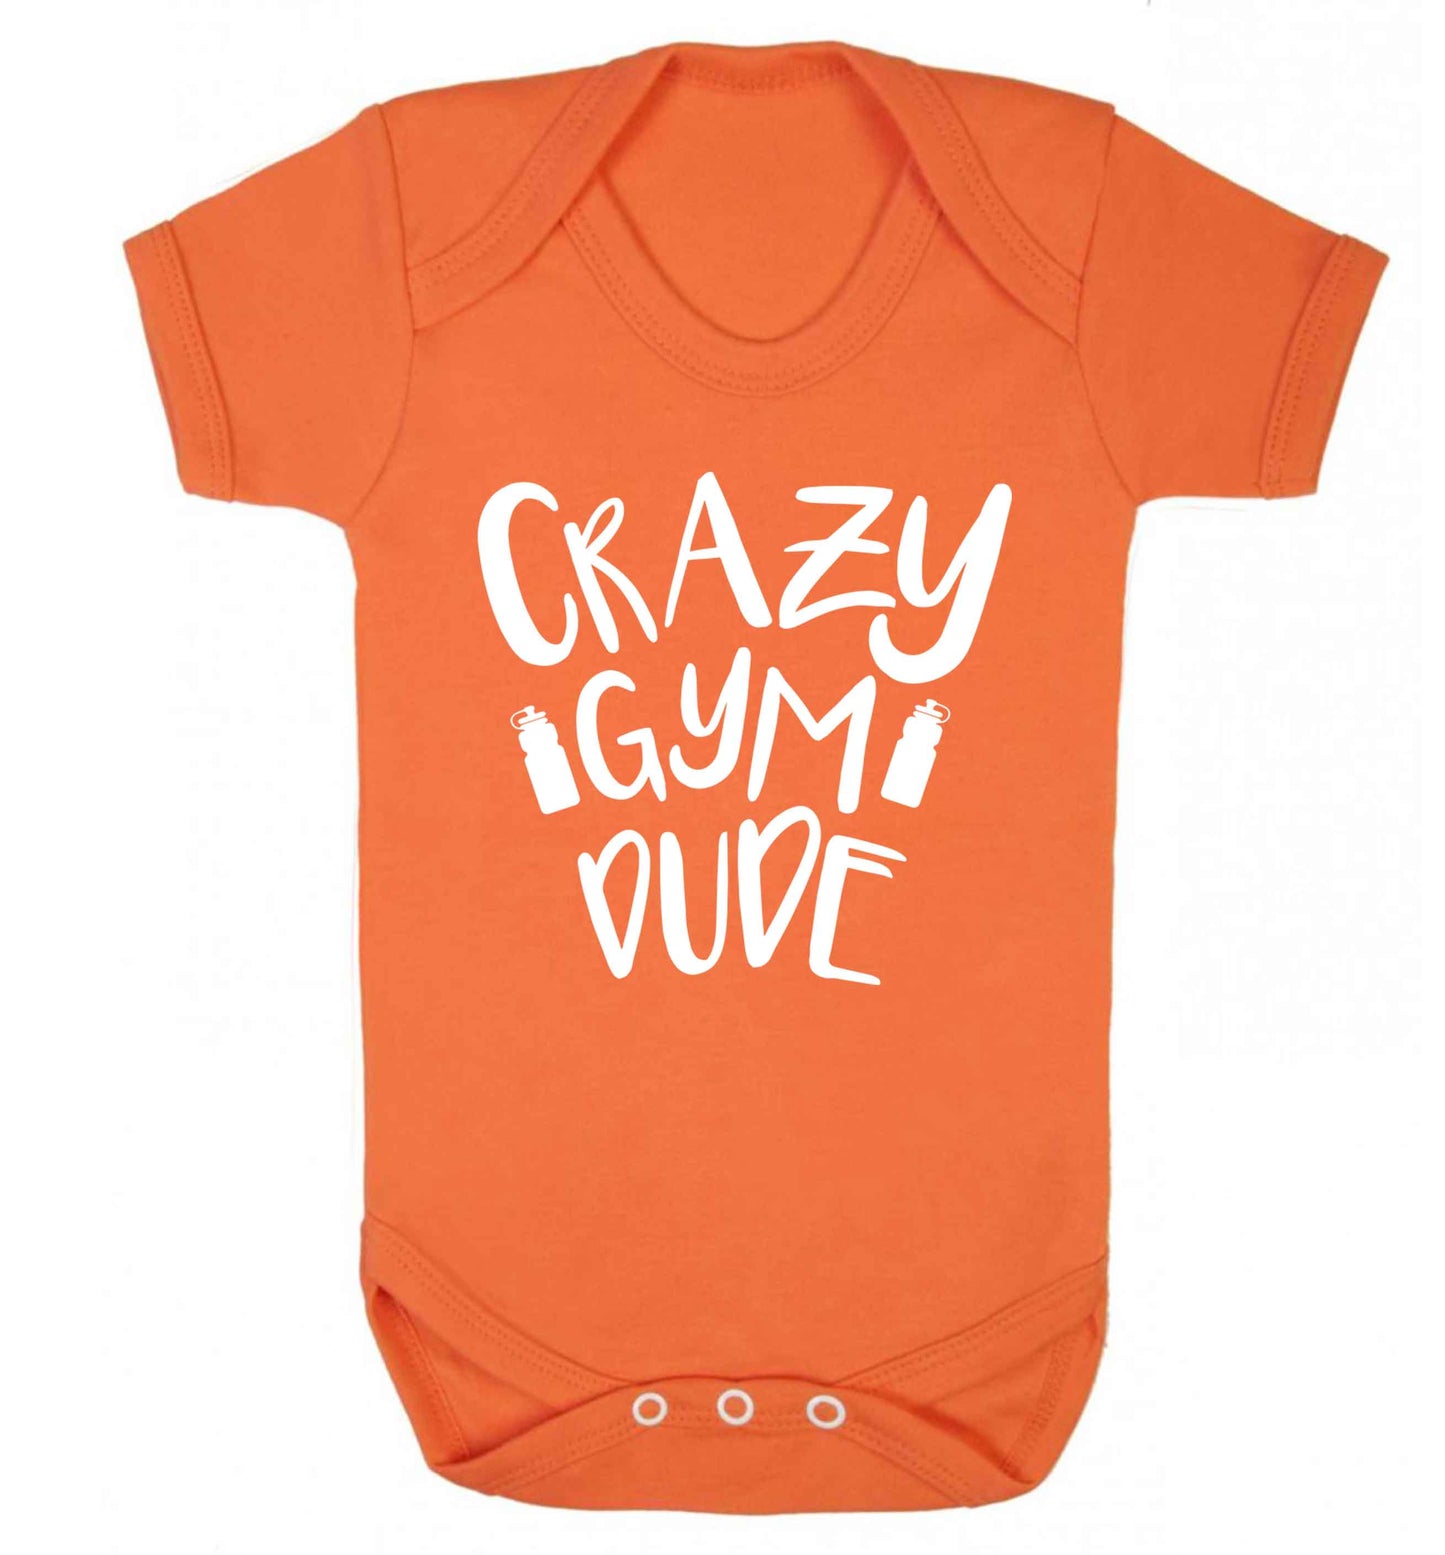 Crazy gym dude Baby Vest orange 18-24 months